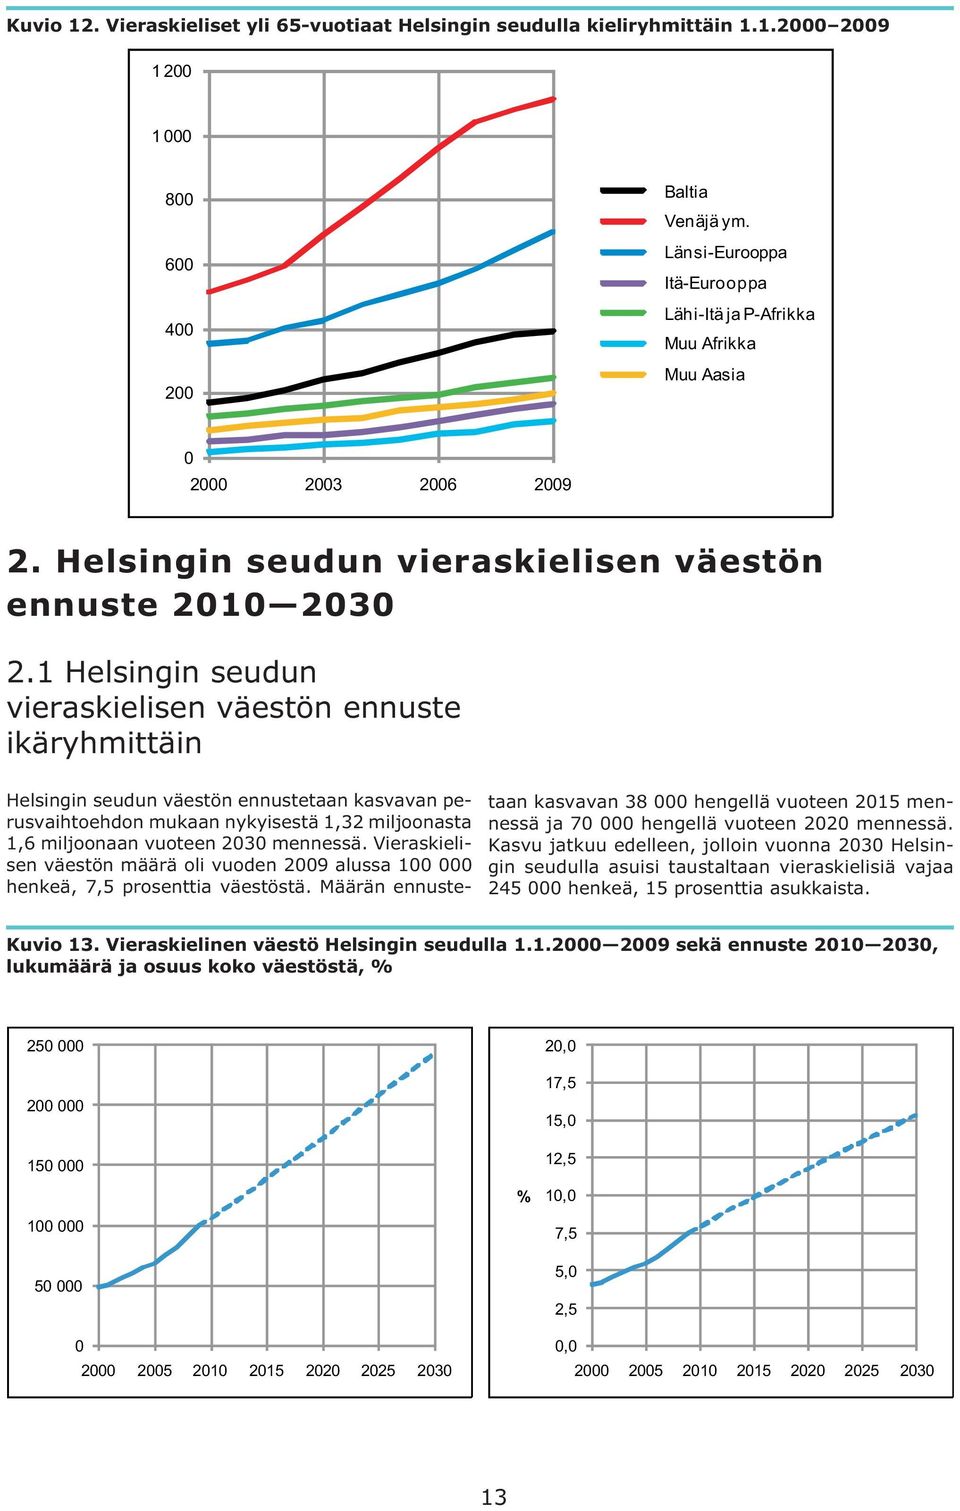 1 Helsingin seudun vieraskielisen väestön ennuste ikäryhmittäin Helsingin seudun väestön ennustetaan kasvavan perusvaihtoehdon mukaan nykyisestä 1,32 miljoonasta 1,6 miljoonaan vuoteen 2030 mennessä.